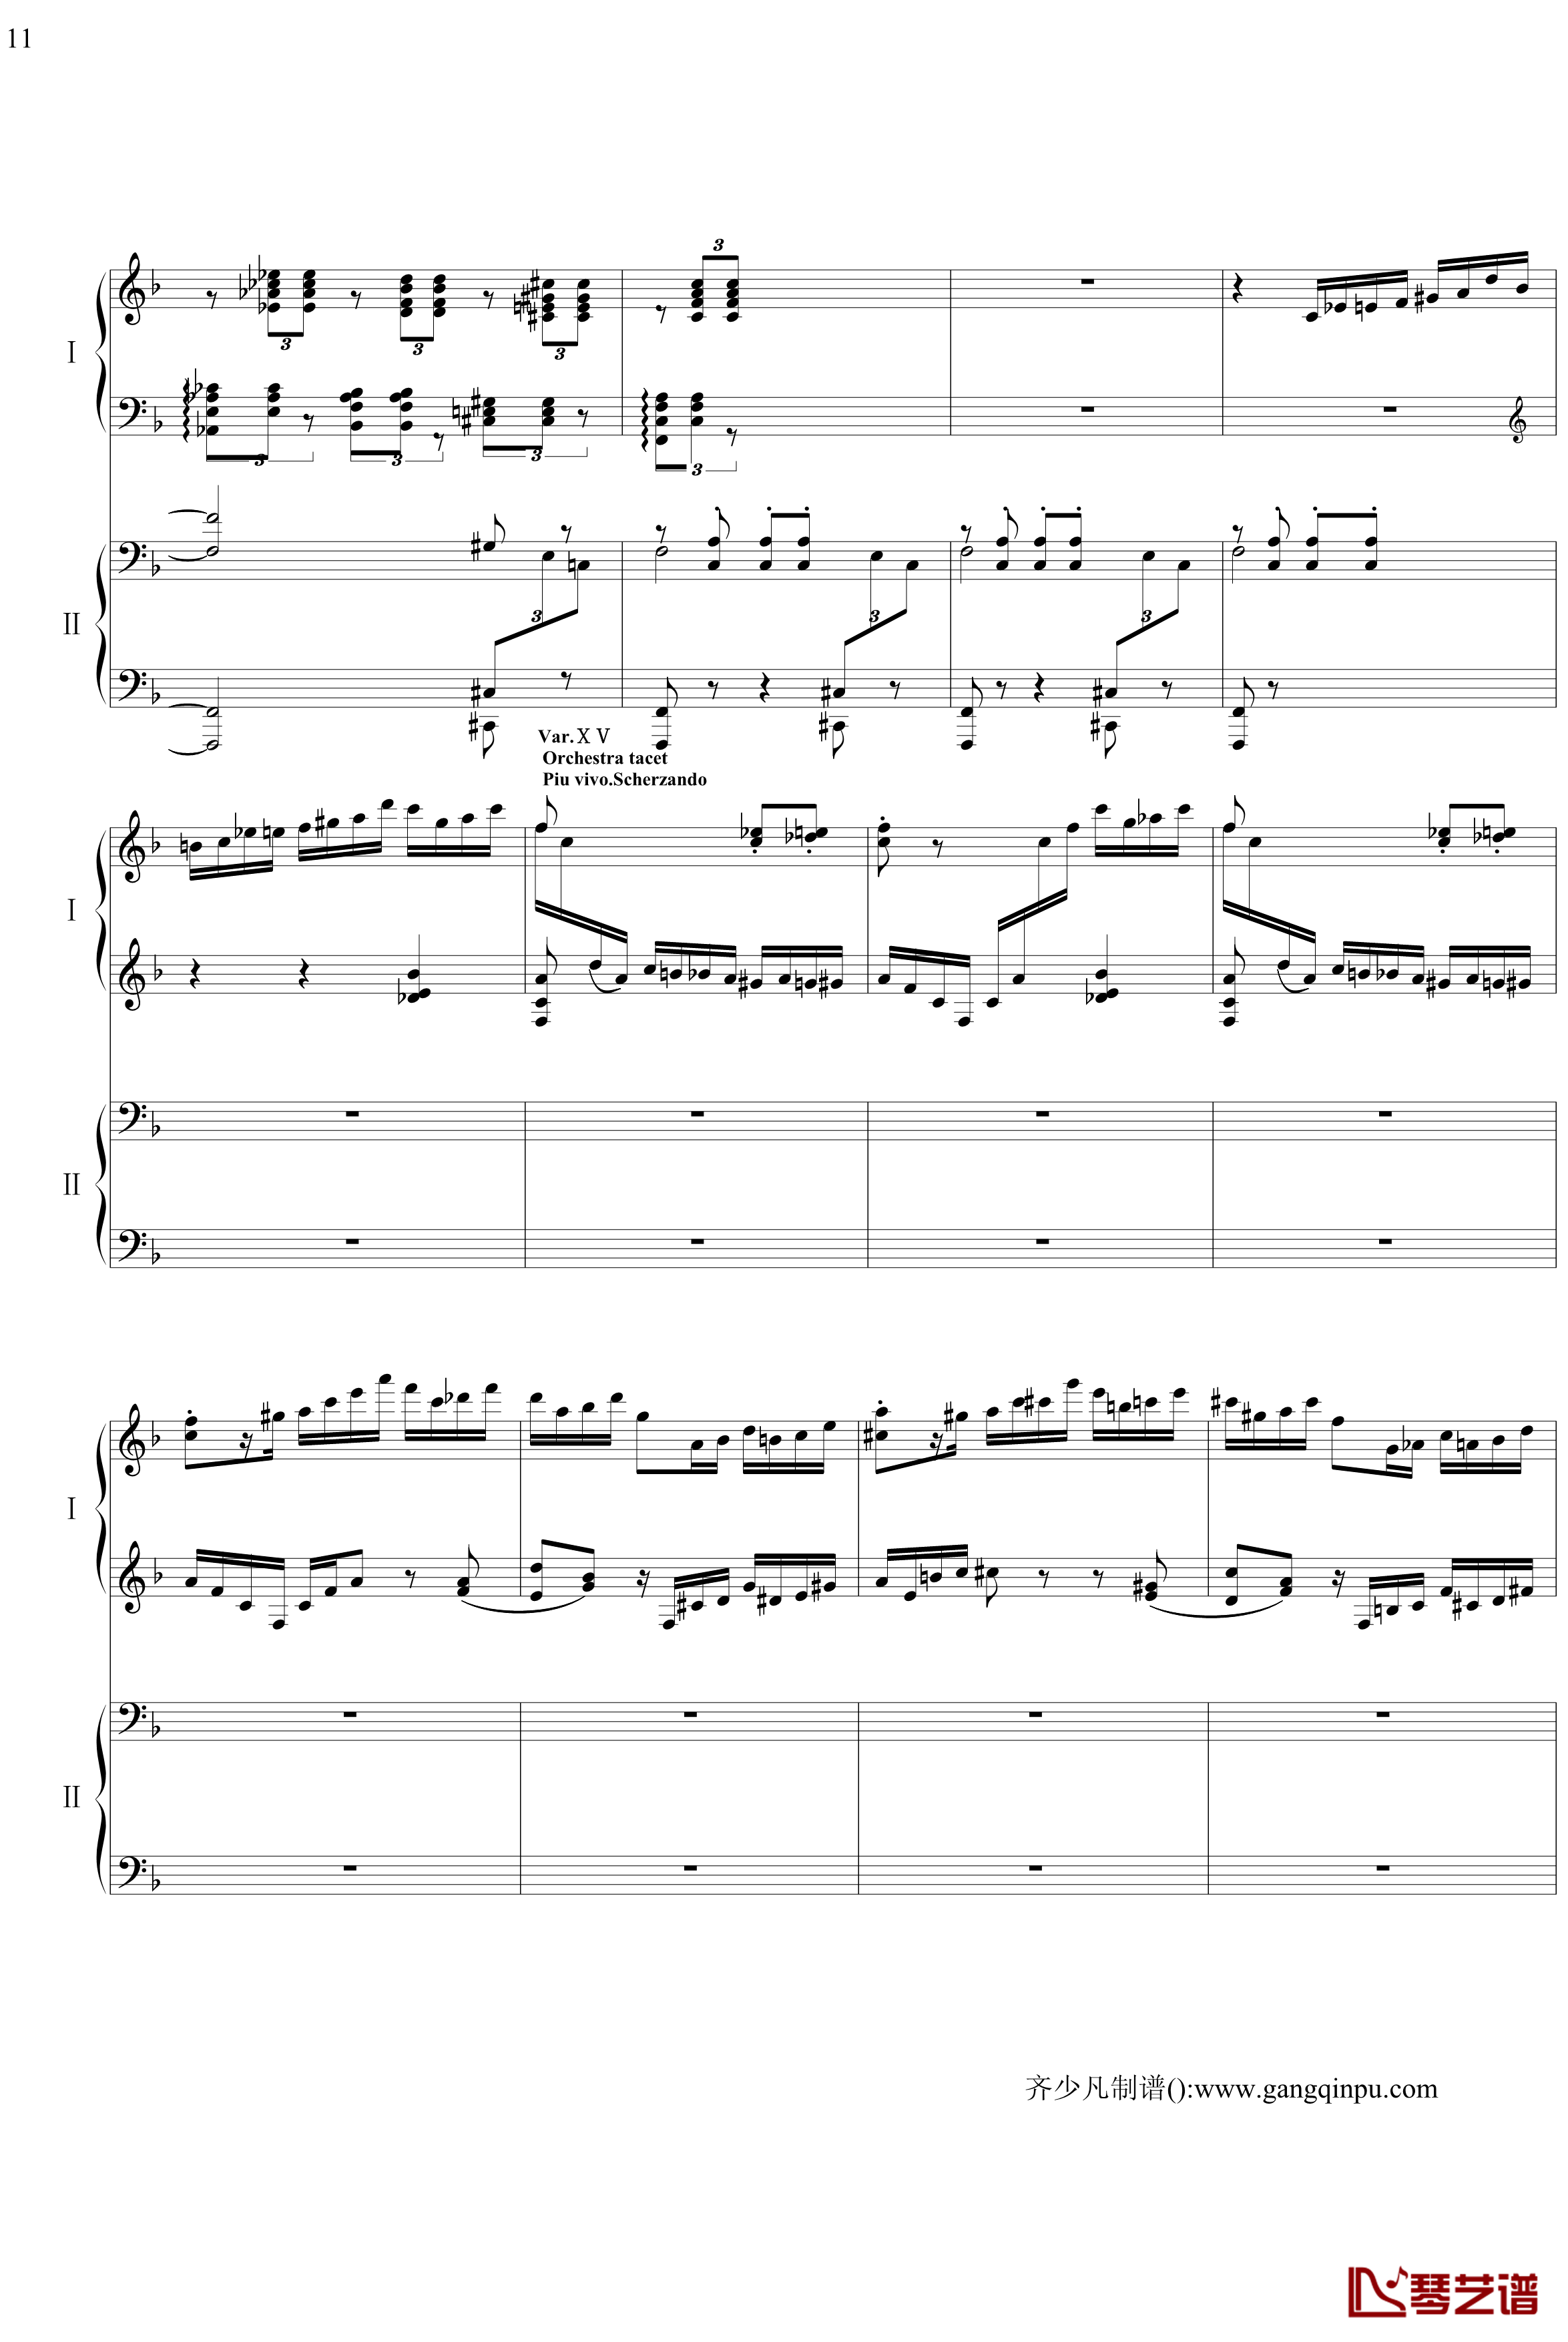 帕格尼尼主题狂想曲钢琴谱-11~18变奏-拉赫马尼若夫11